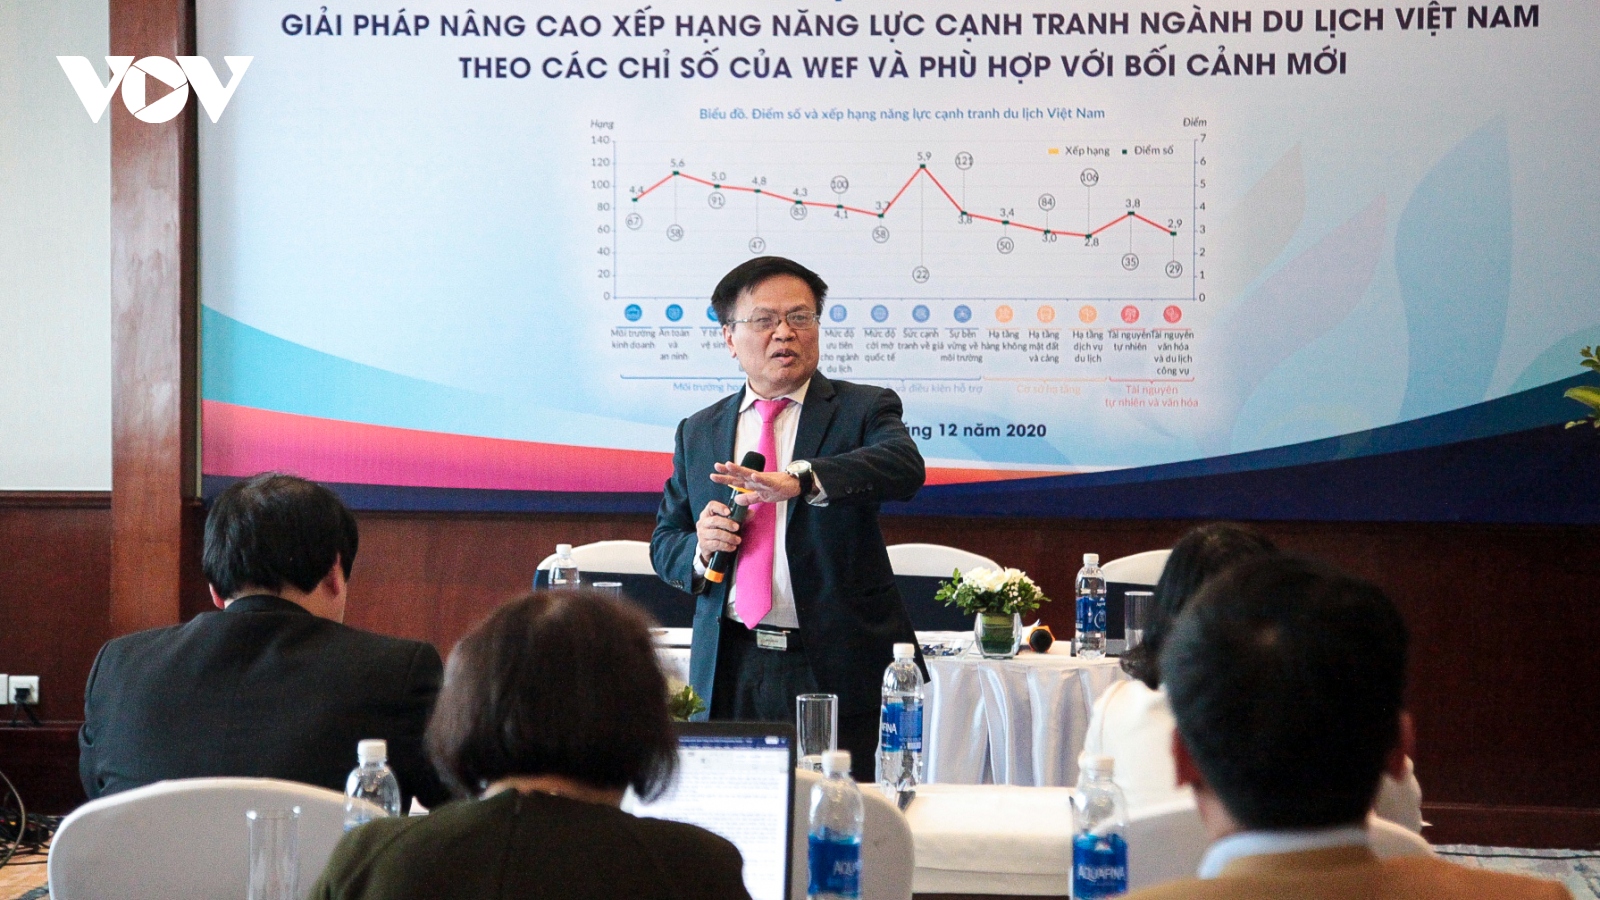 Du lịch Việt Nam nỗ lực tăng sức cạnh tranh giai đoạn hậu Covid-19